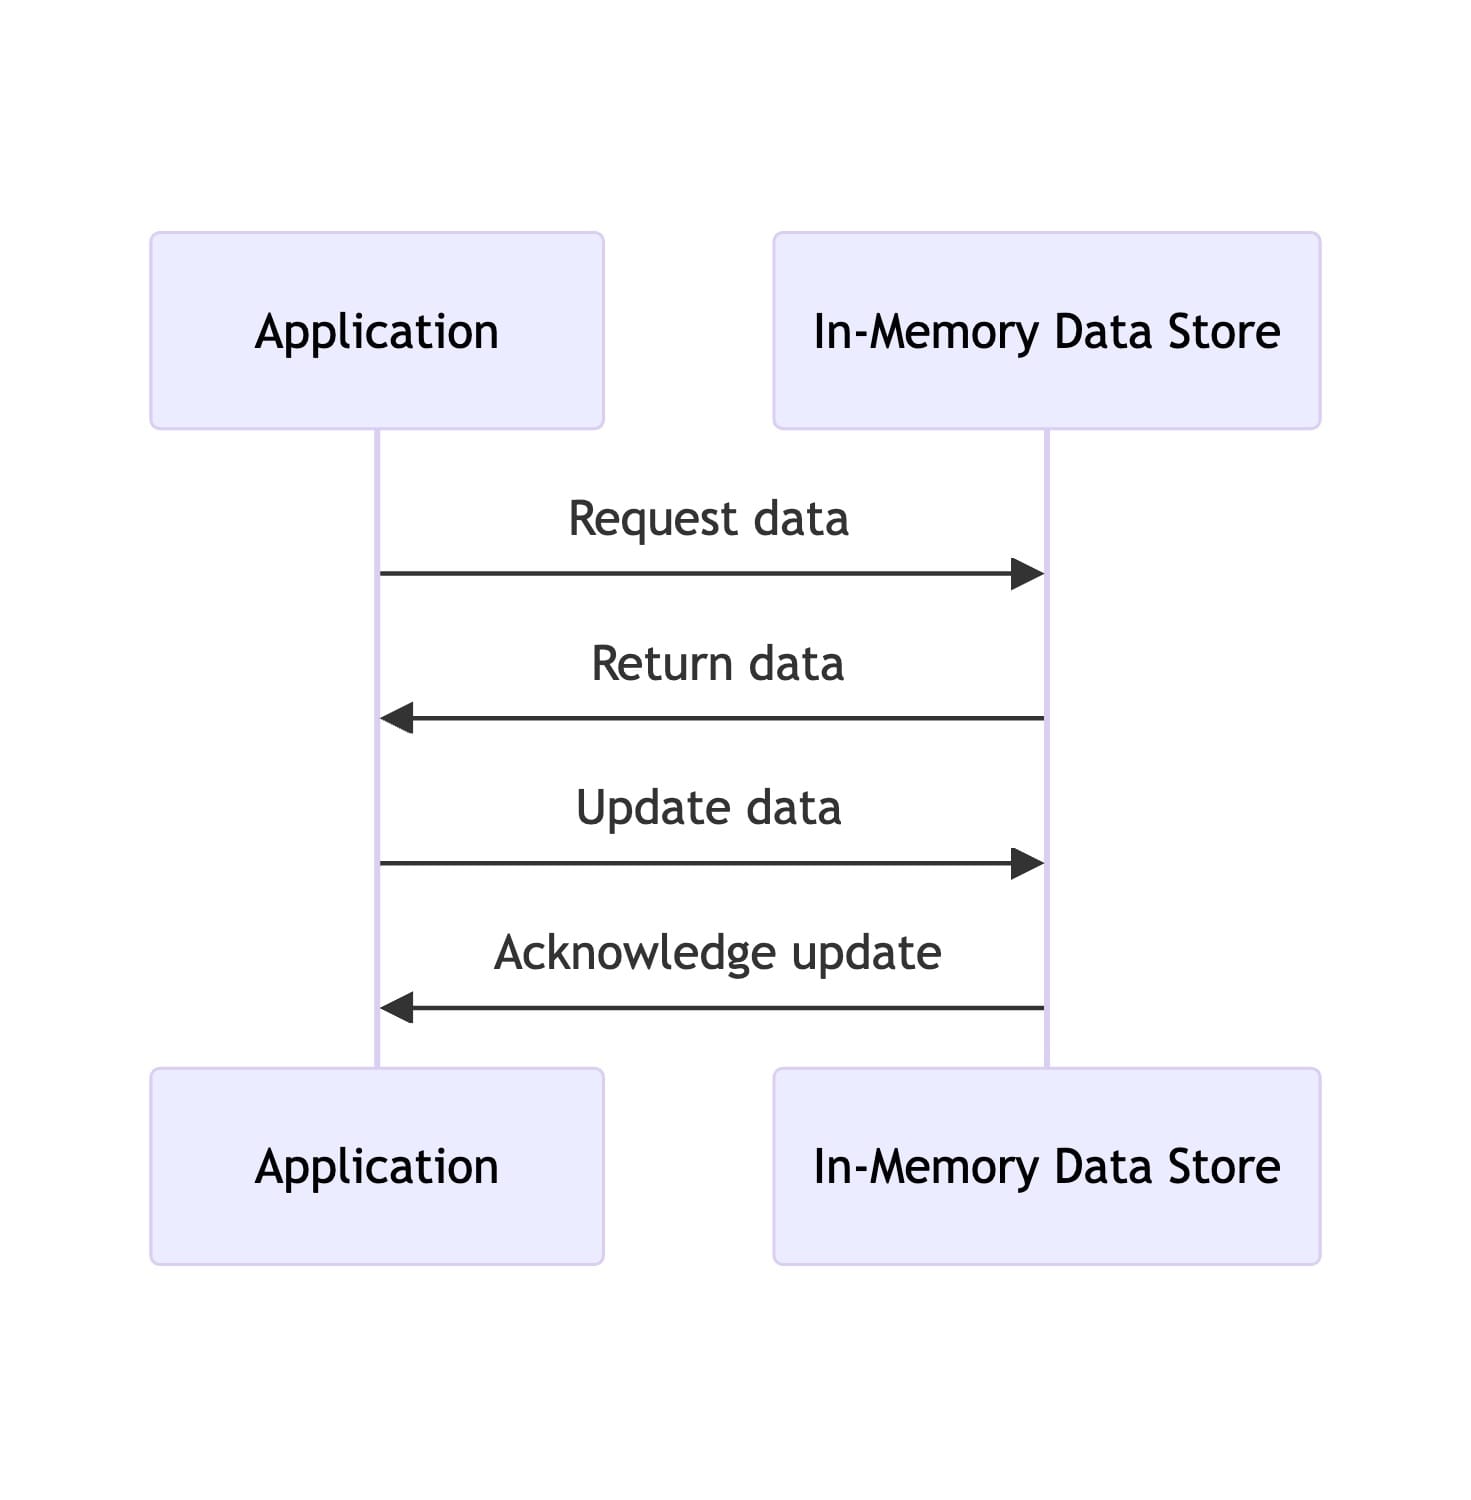 In-Memory Data Store